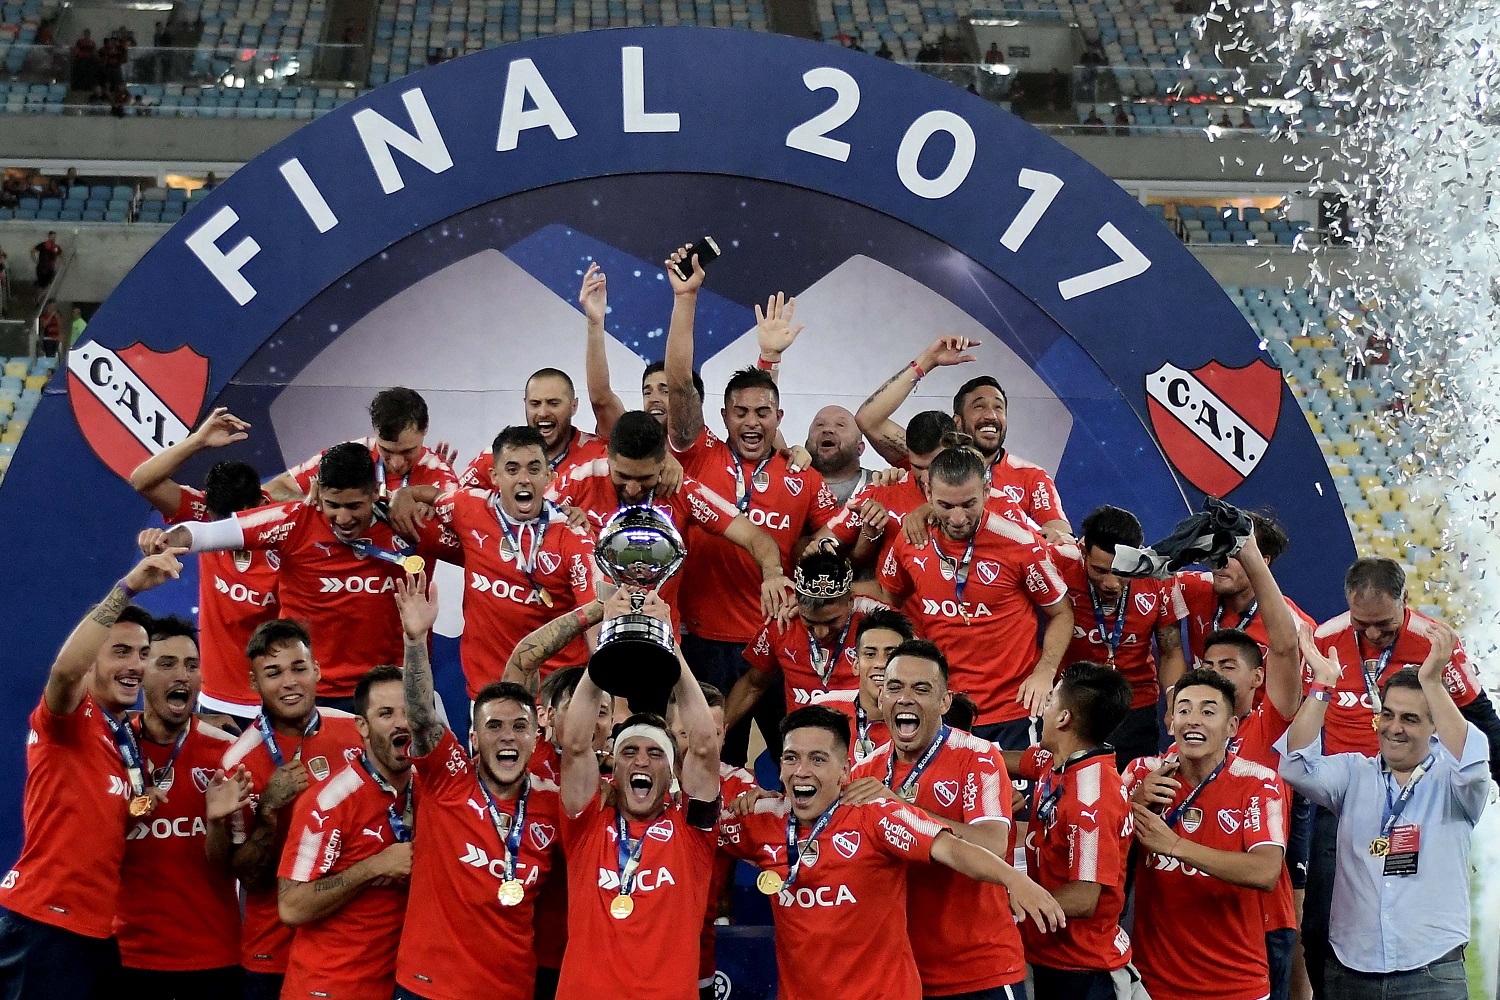 Club Atlético Independiente 2017 Copa Sudamericana Club Atlético